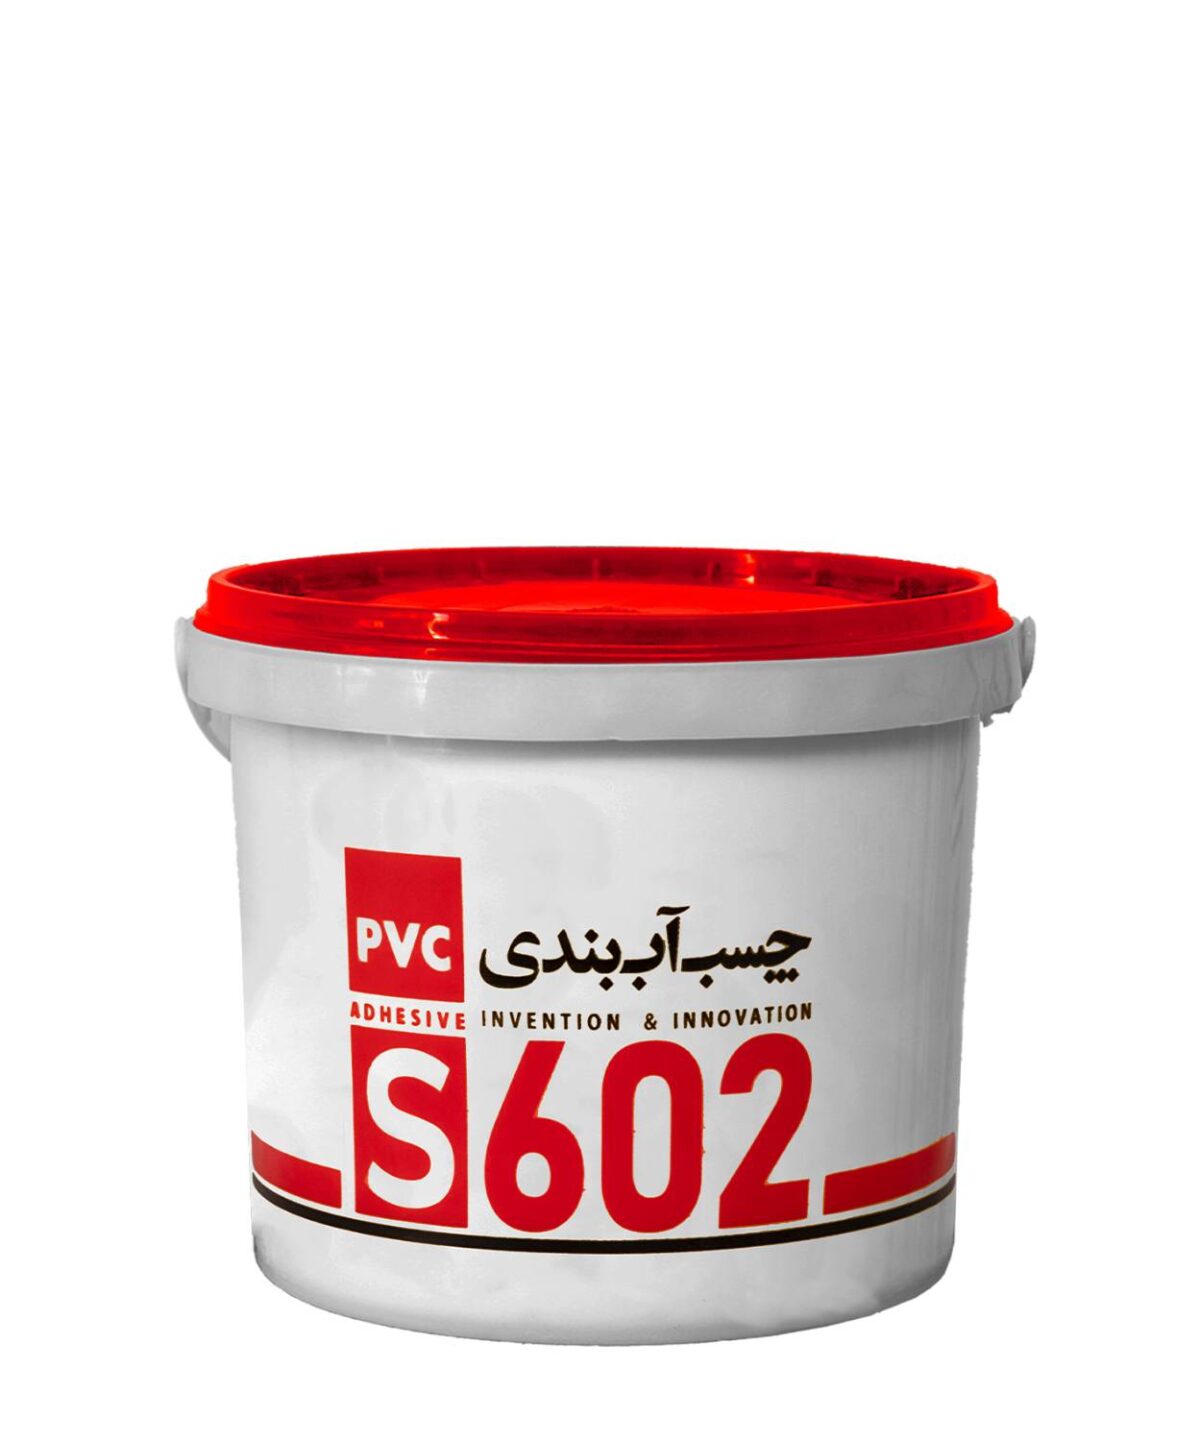 چسب آب بندی PVC S602 خمیری 3 کیلوگرمی - شرکت آکوارزین